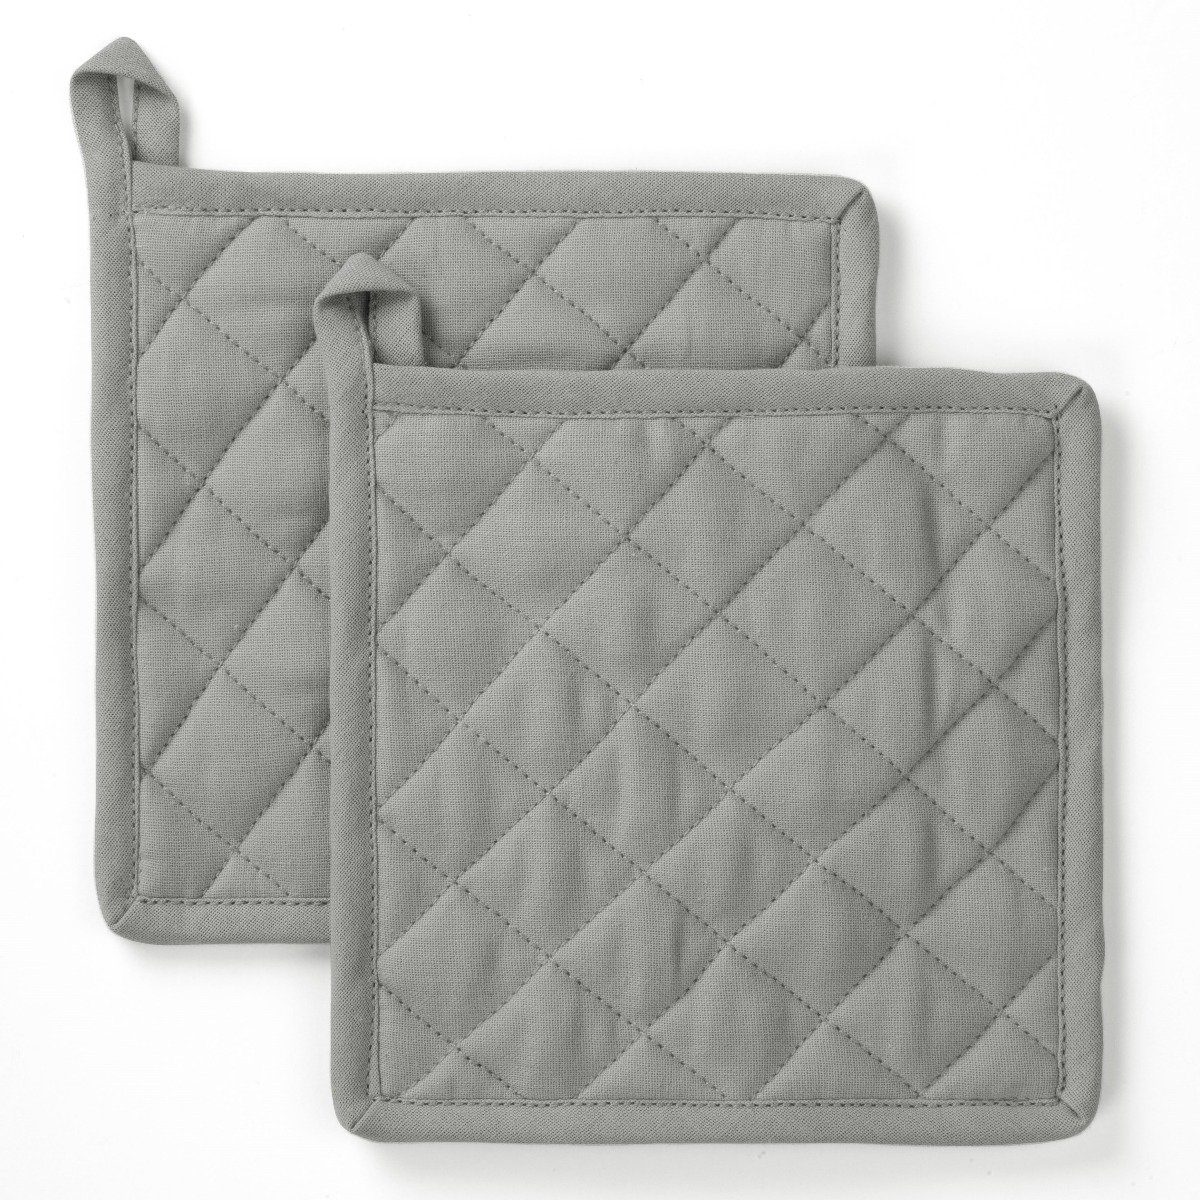 Byrklund Geschirrtuch Topflappen Stay Cold Grau - 2x 20x20 cm, aus 100% Baumwolle, Premium-Qualität - Vielfältig einsetzbares